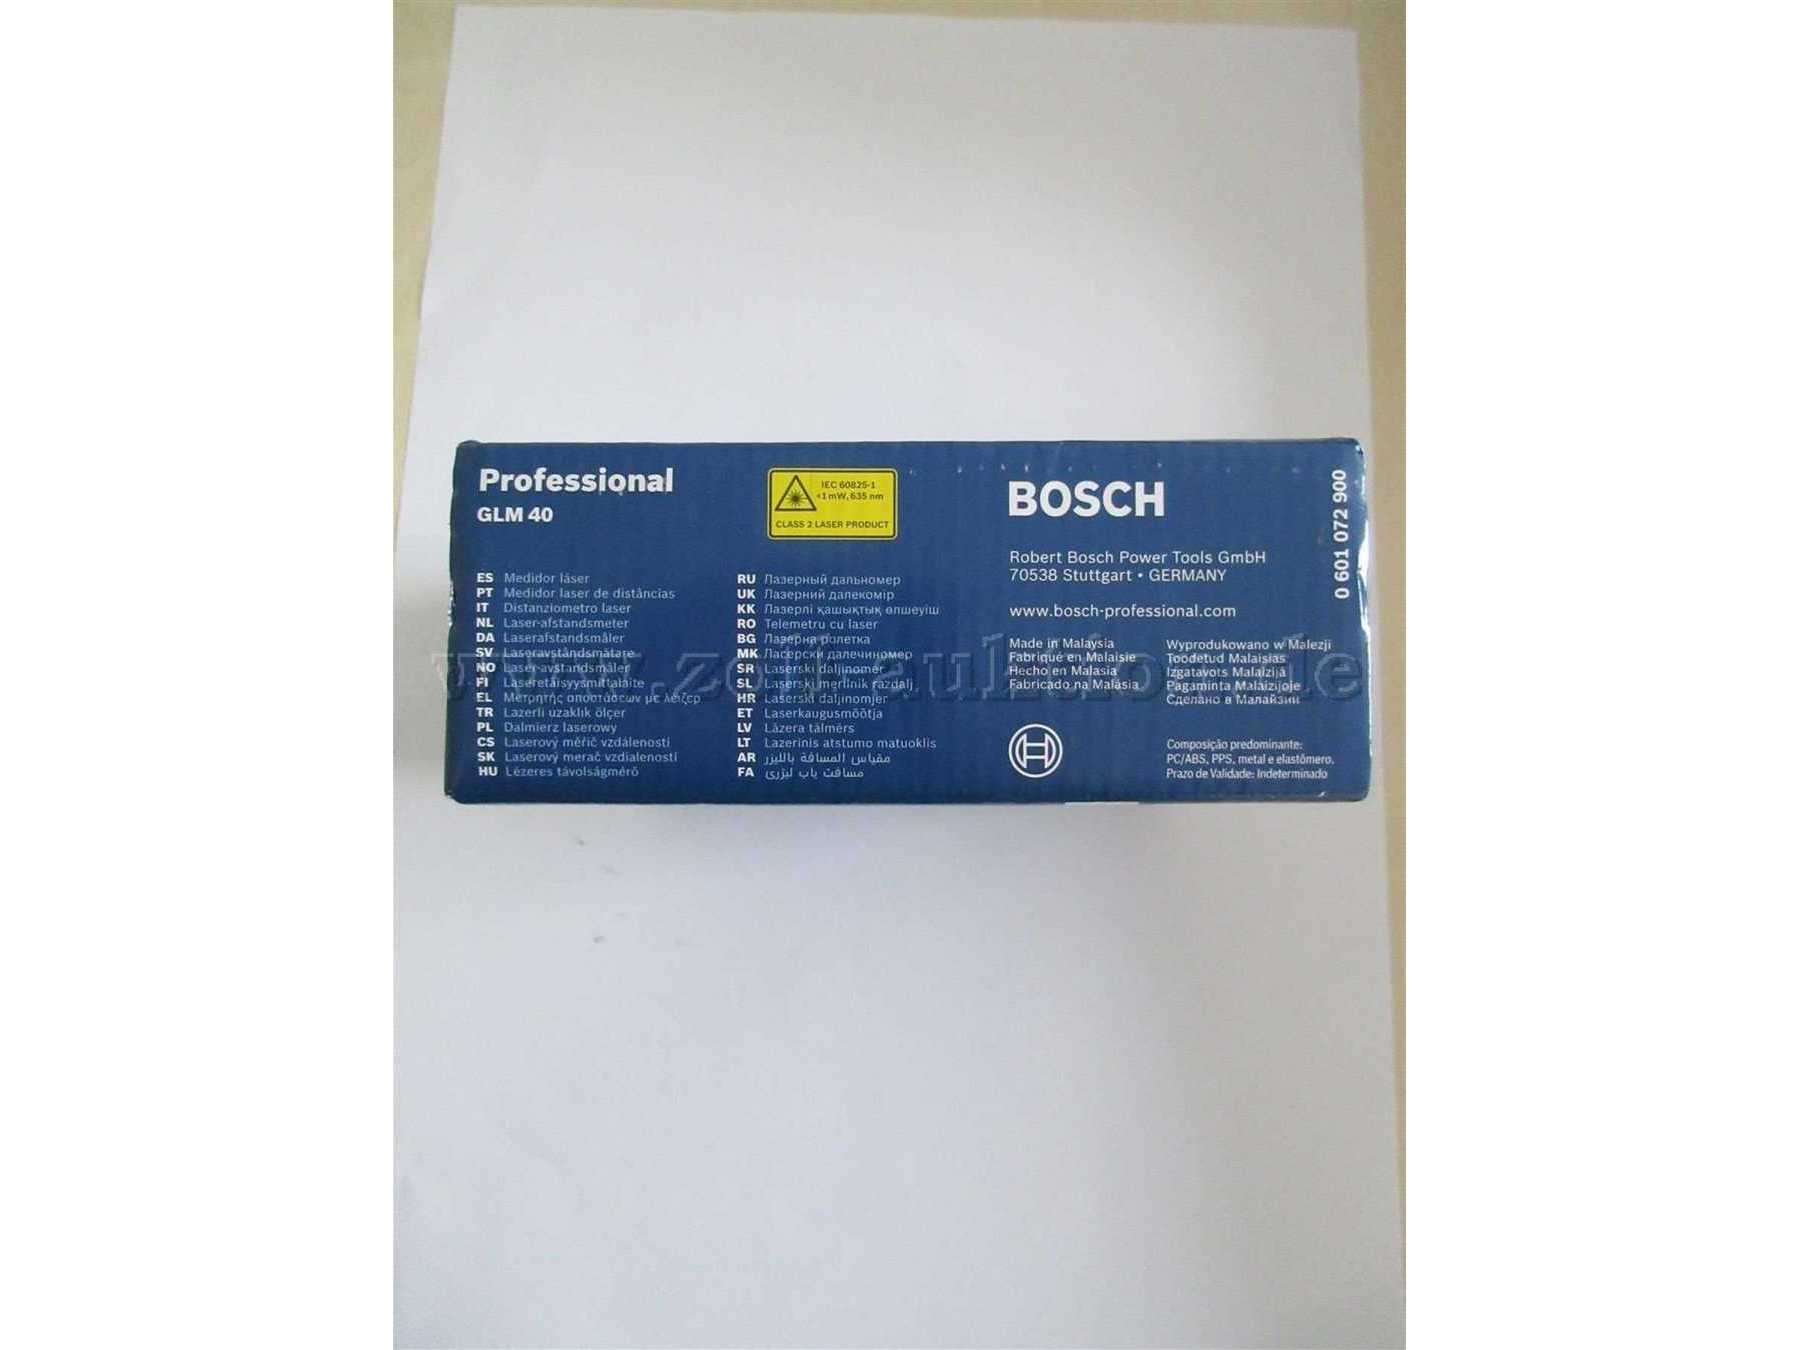 Bosch GLM40 Karton Seitenansicht